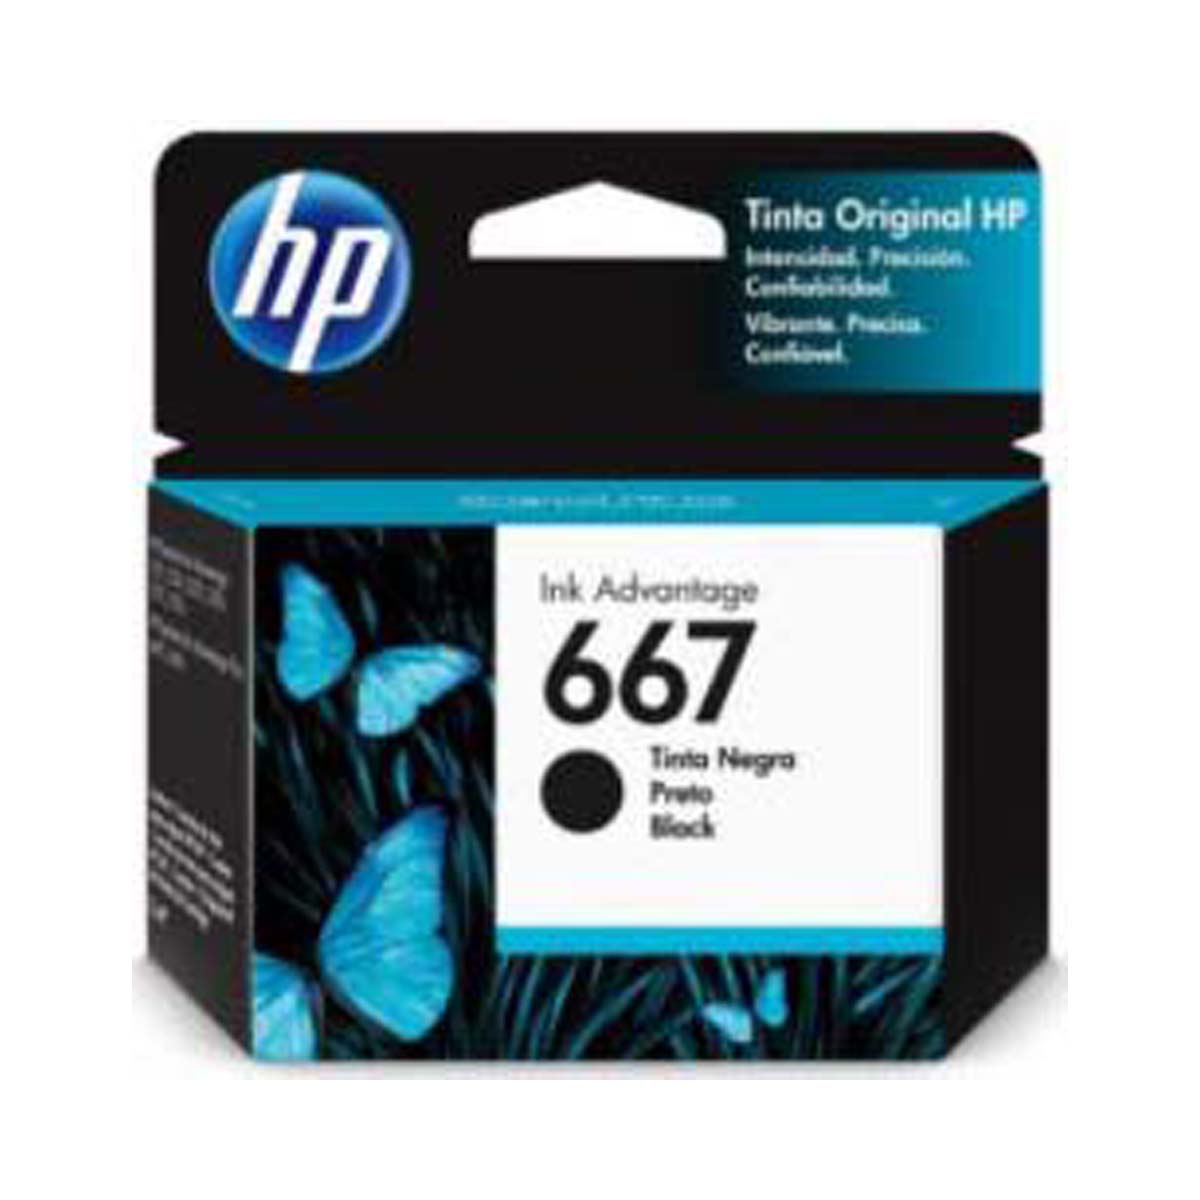 HP - 667 Ink Cartridge, Black